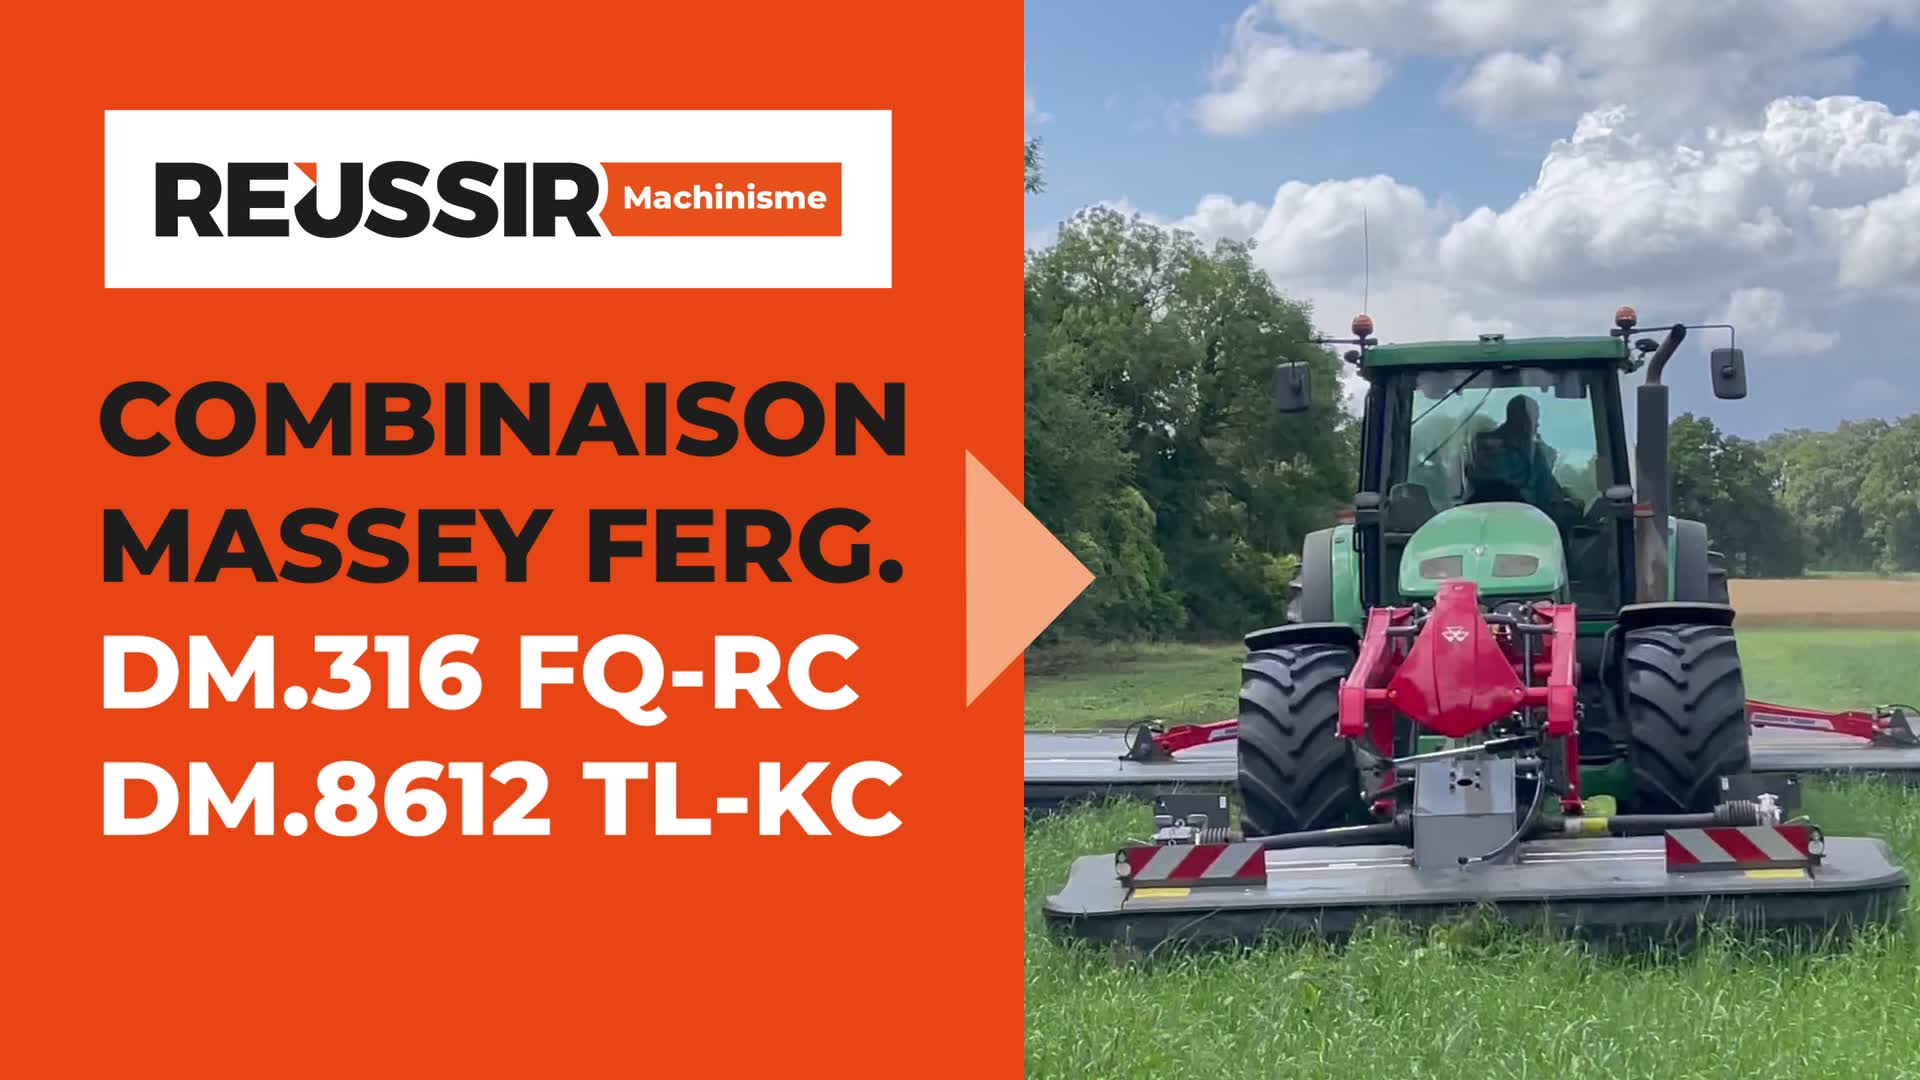 Essai combinaison Massey Ferguson DM.316 FQ-RC et DM.8612 TL-KC : simplicité et compacité